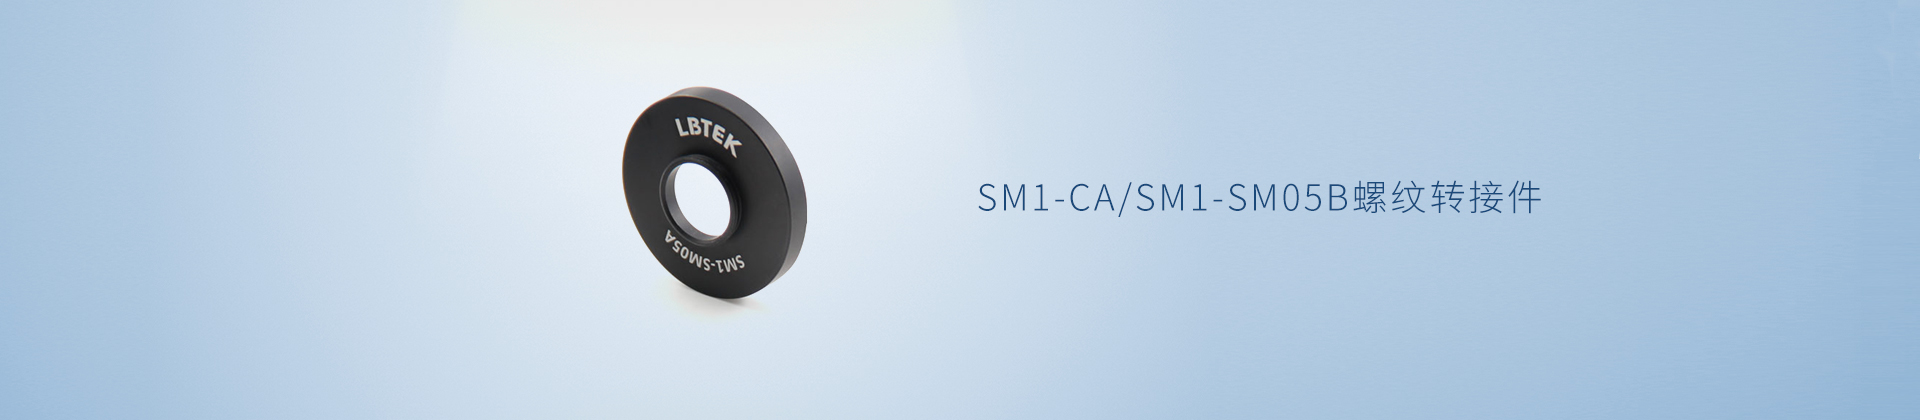 SM1-CA/SM1-SM05B螺纹转接件